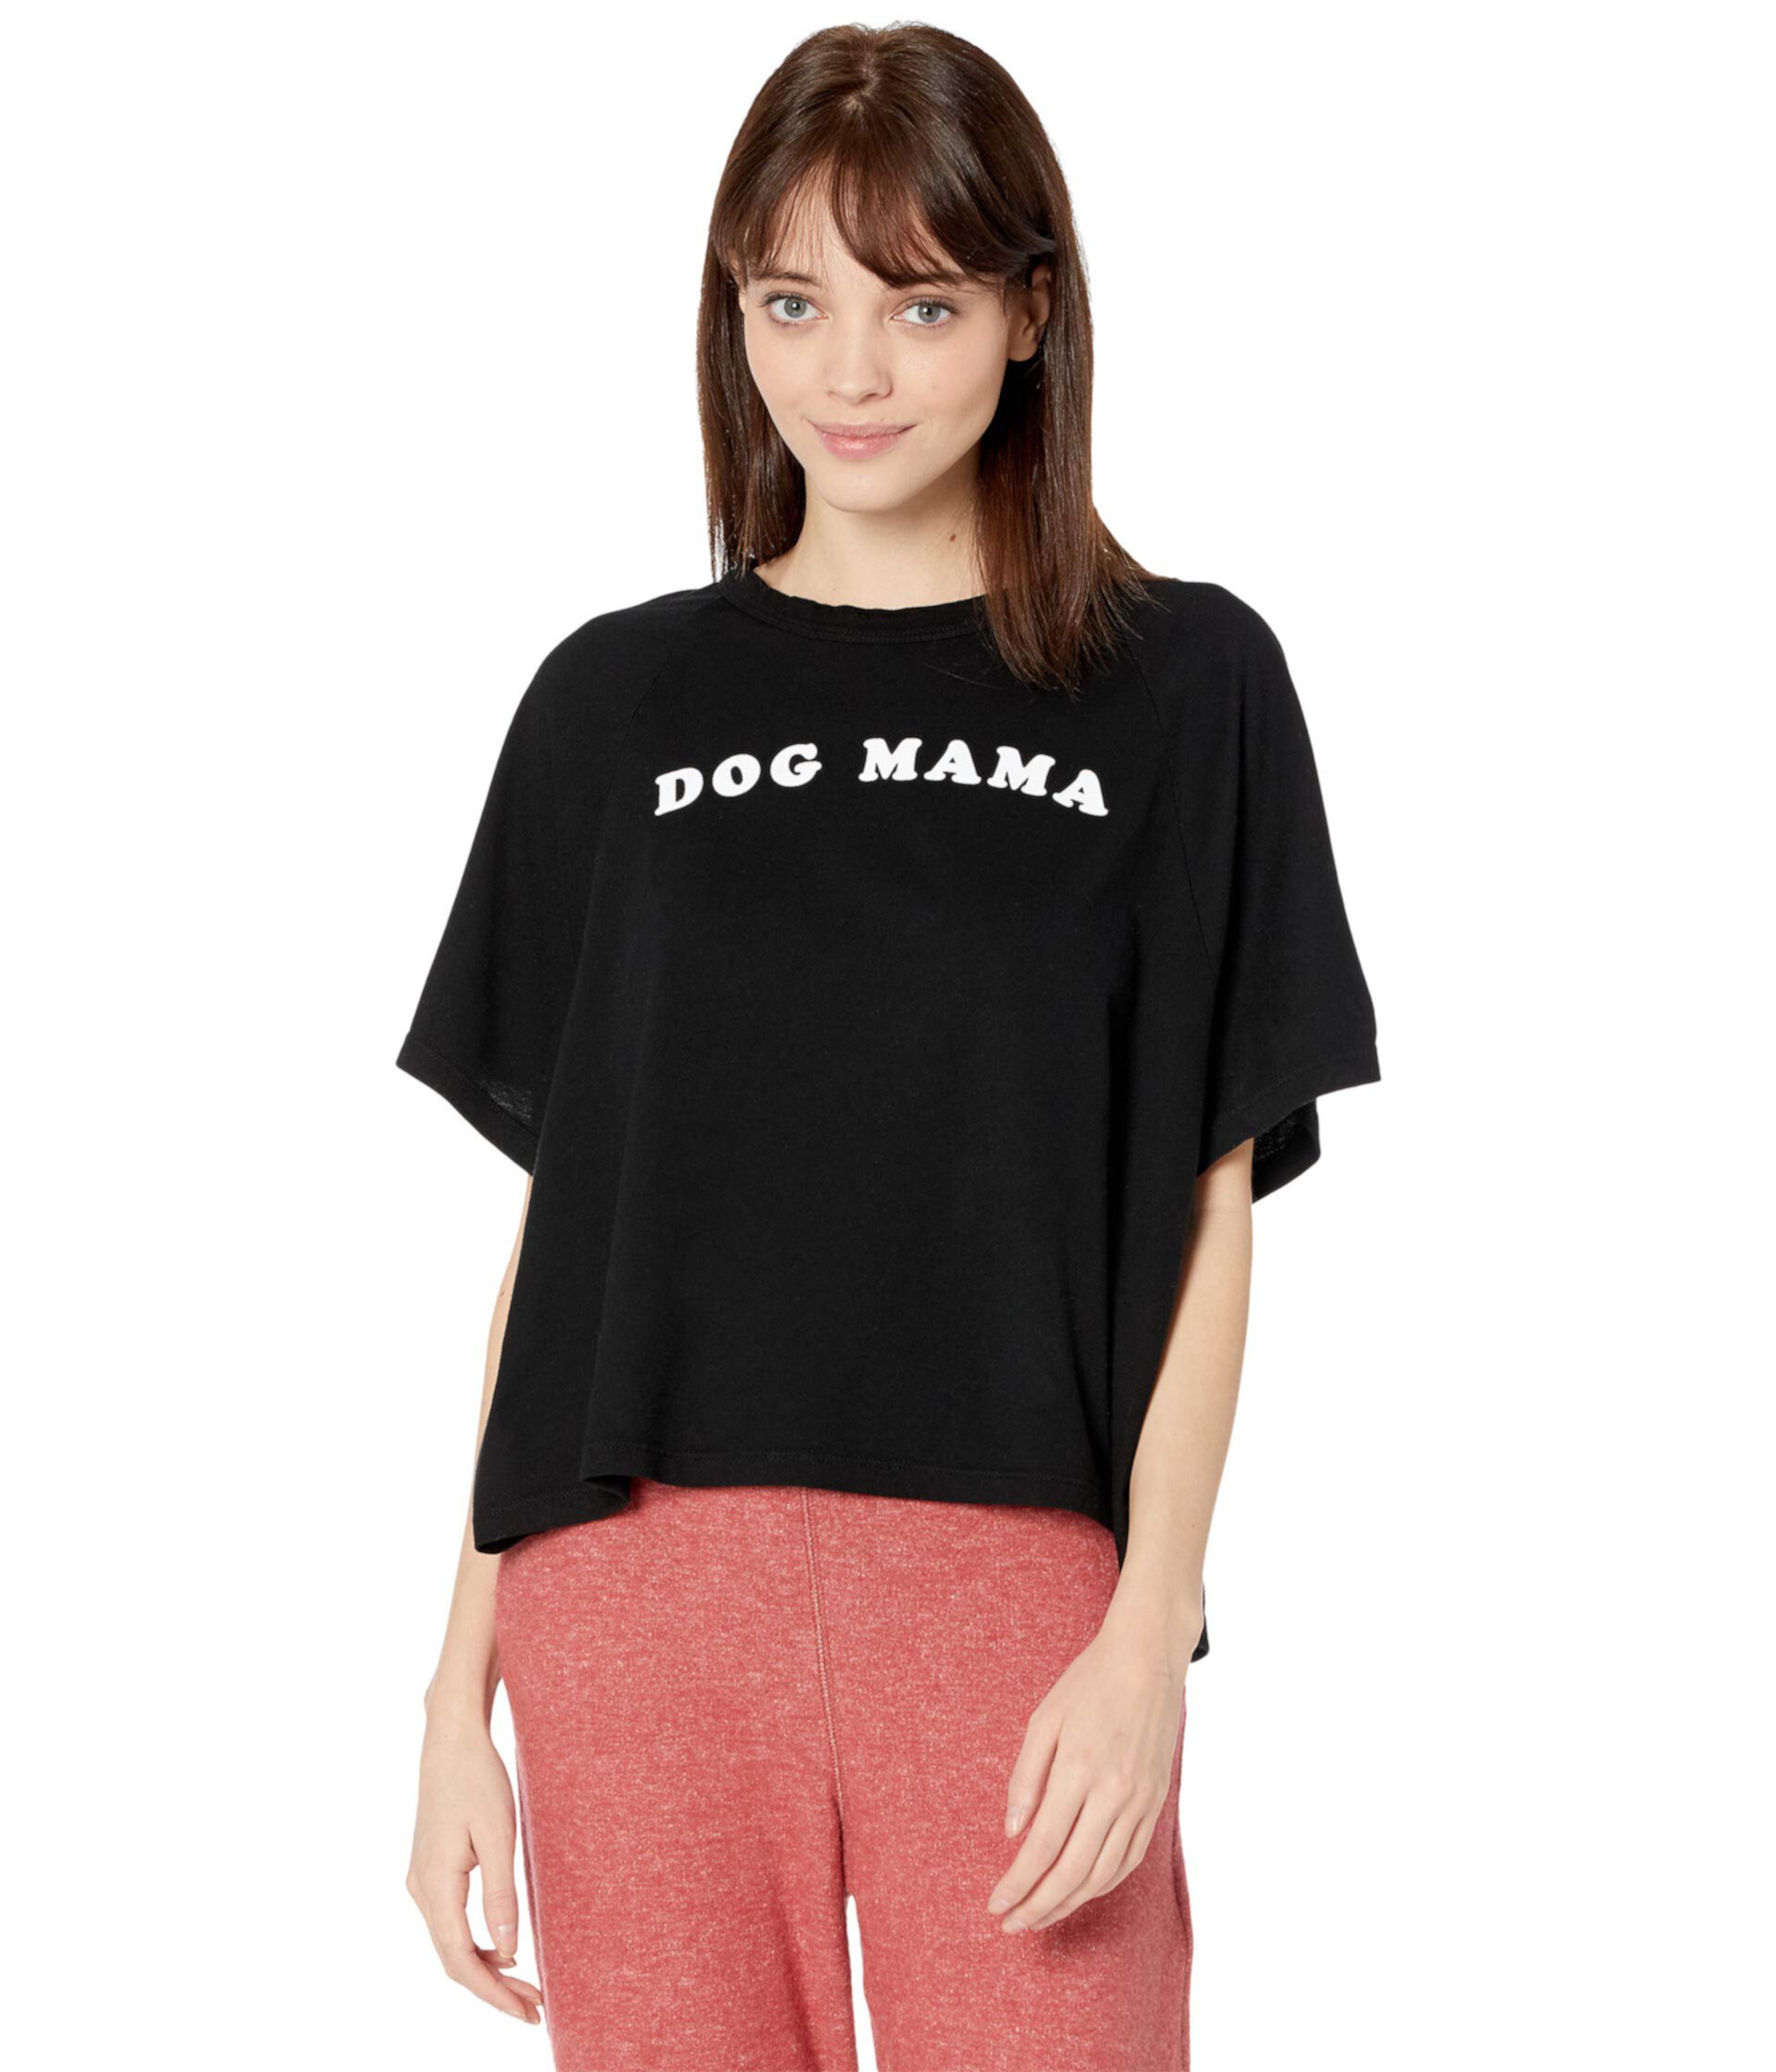 Бетси - собака мама - футболка Good hYOUman